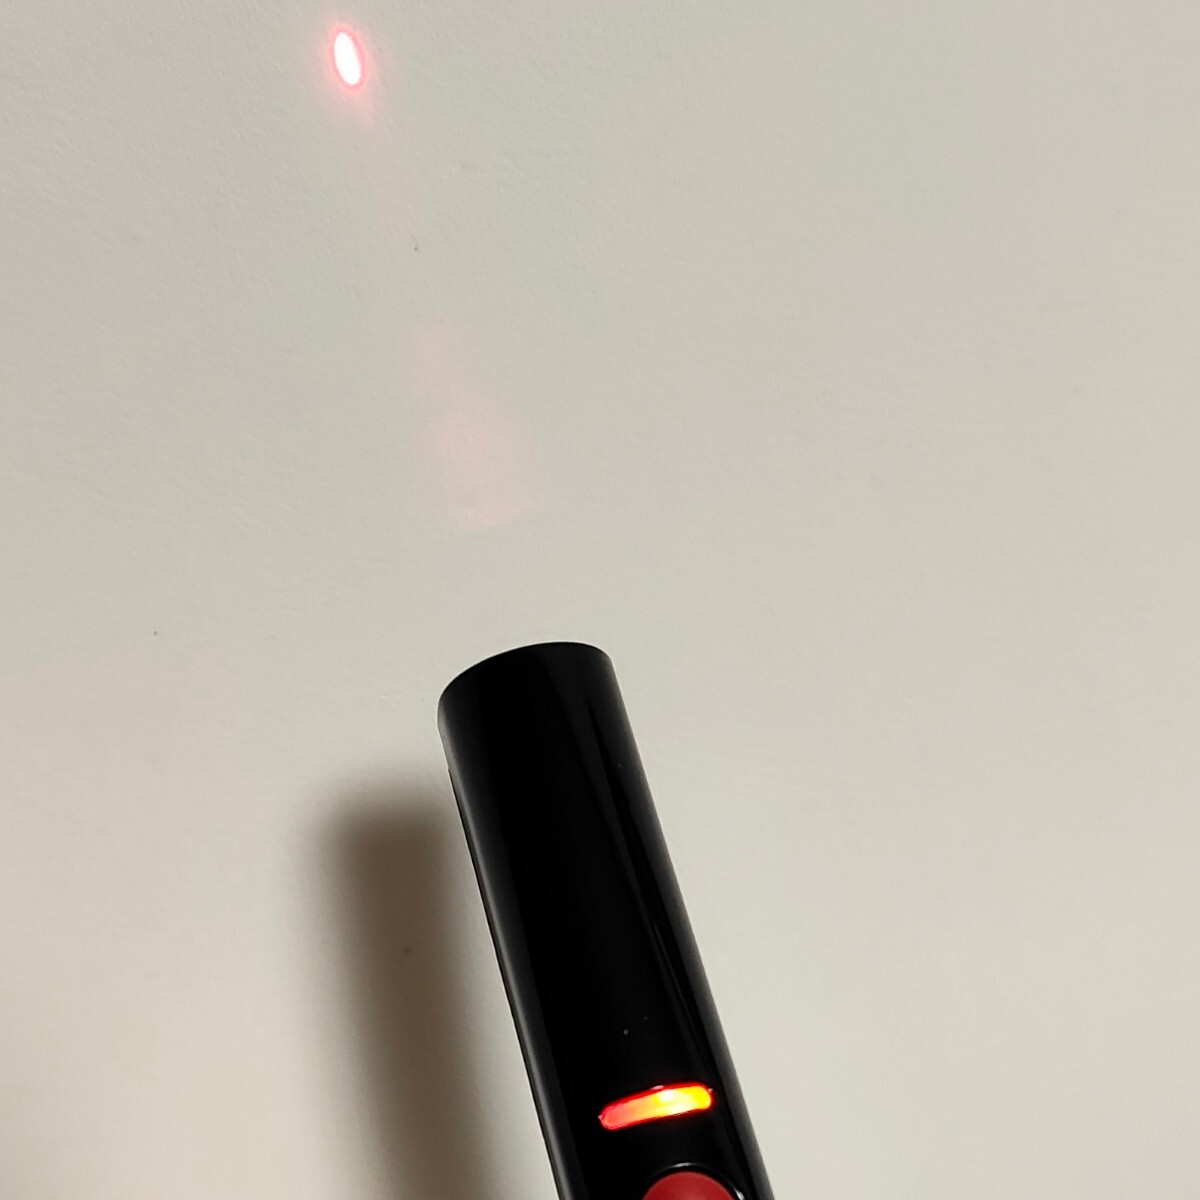 ELECOM ELP-RL06BK laser pointer pen type red RED